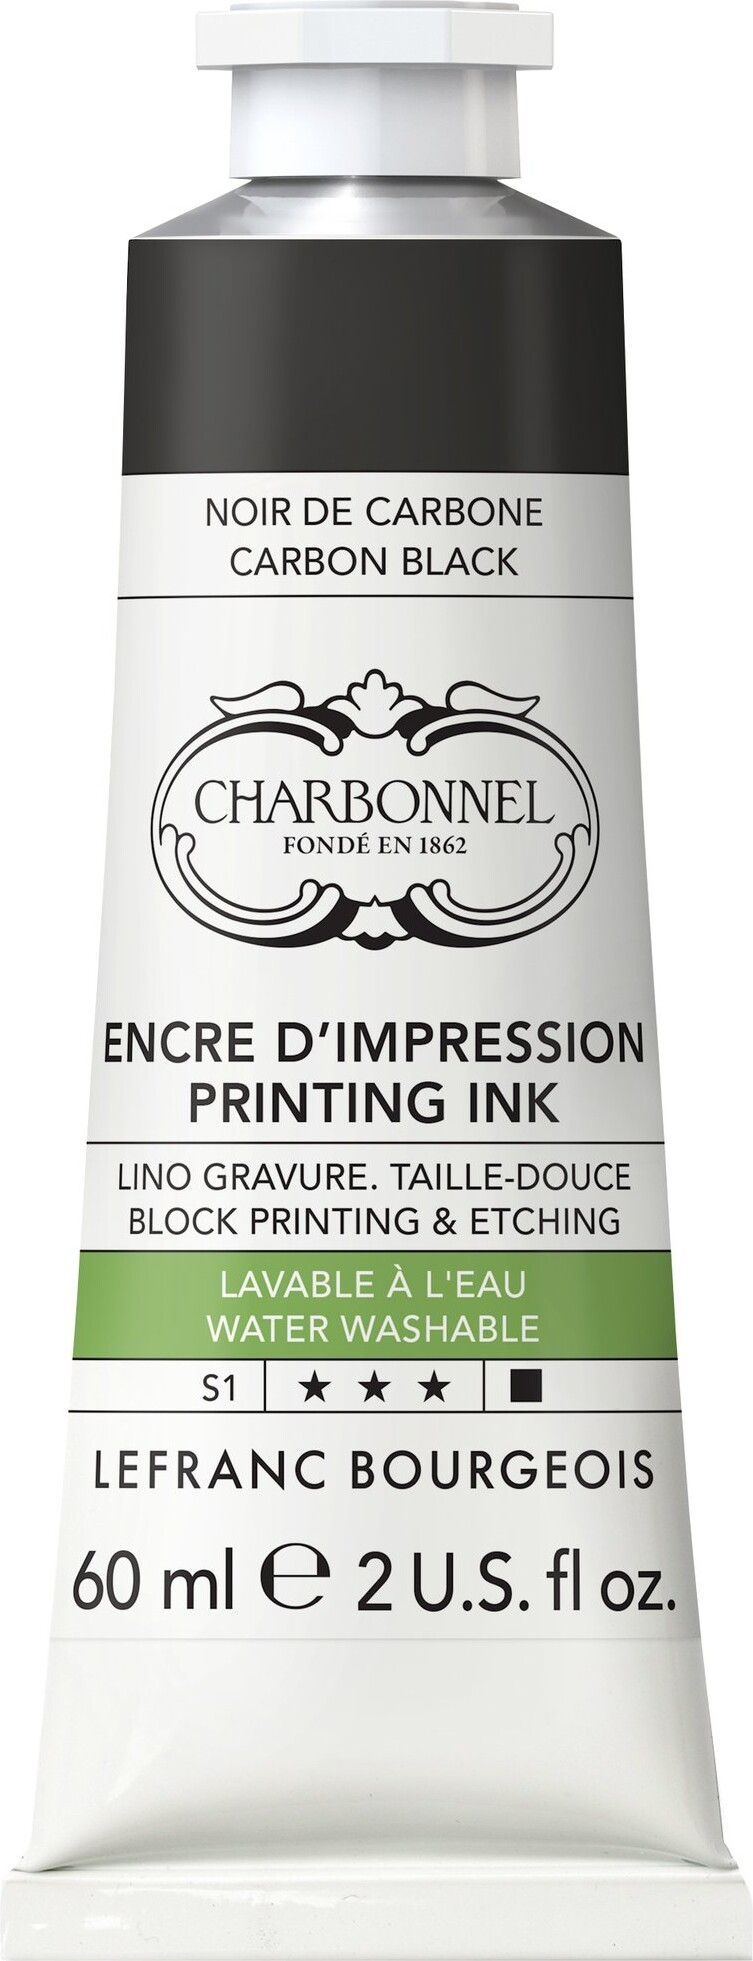 Se Charbonnel - Printing Ink Blæk - Carbon Black 150 Ml hos Gucca.dk